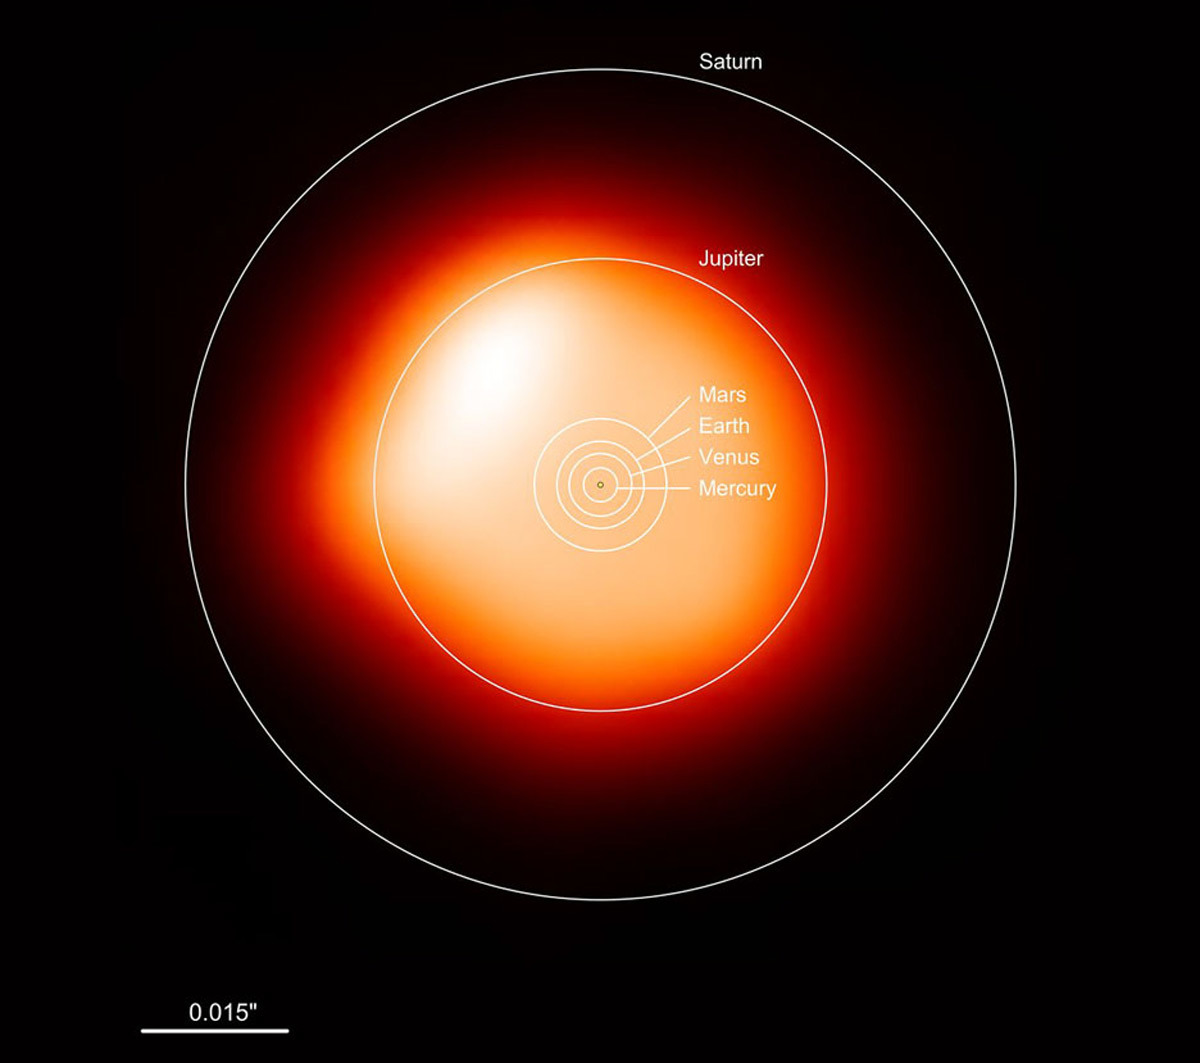 Imagen de Betelgeuse observada con ALMA comparada con el sistema solar.